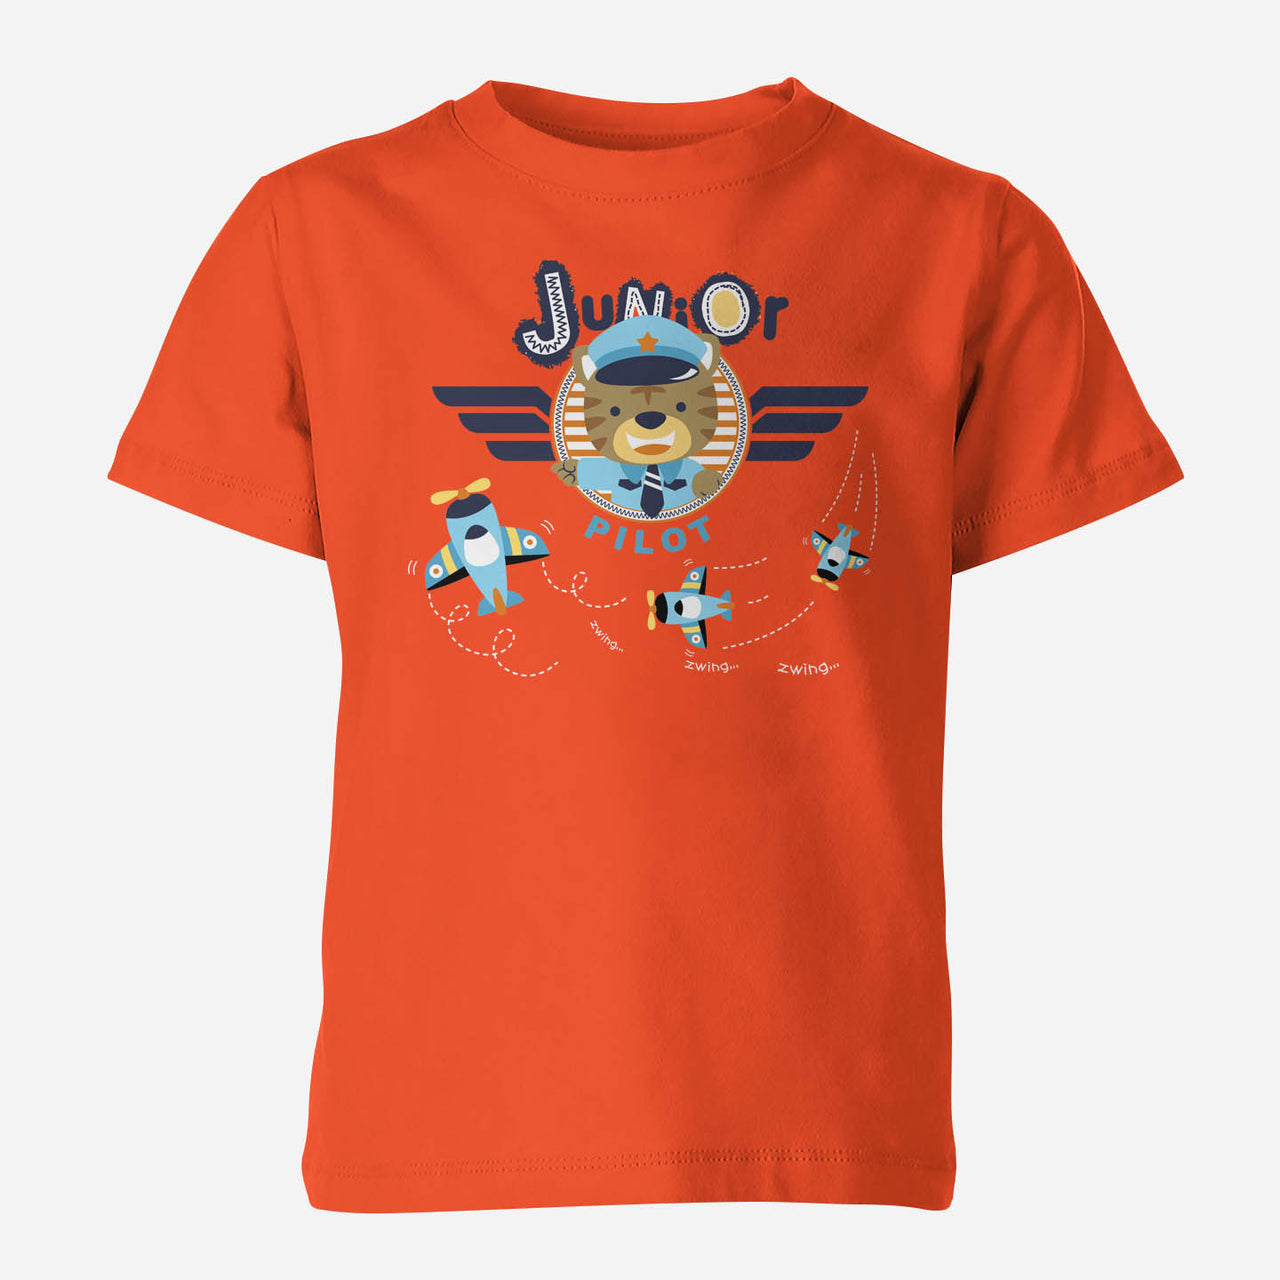 Junior Pilot Designed Children T-Shirts